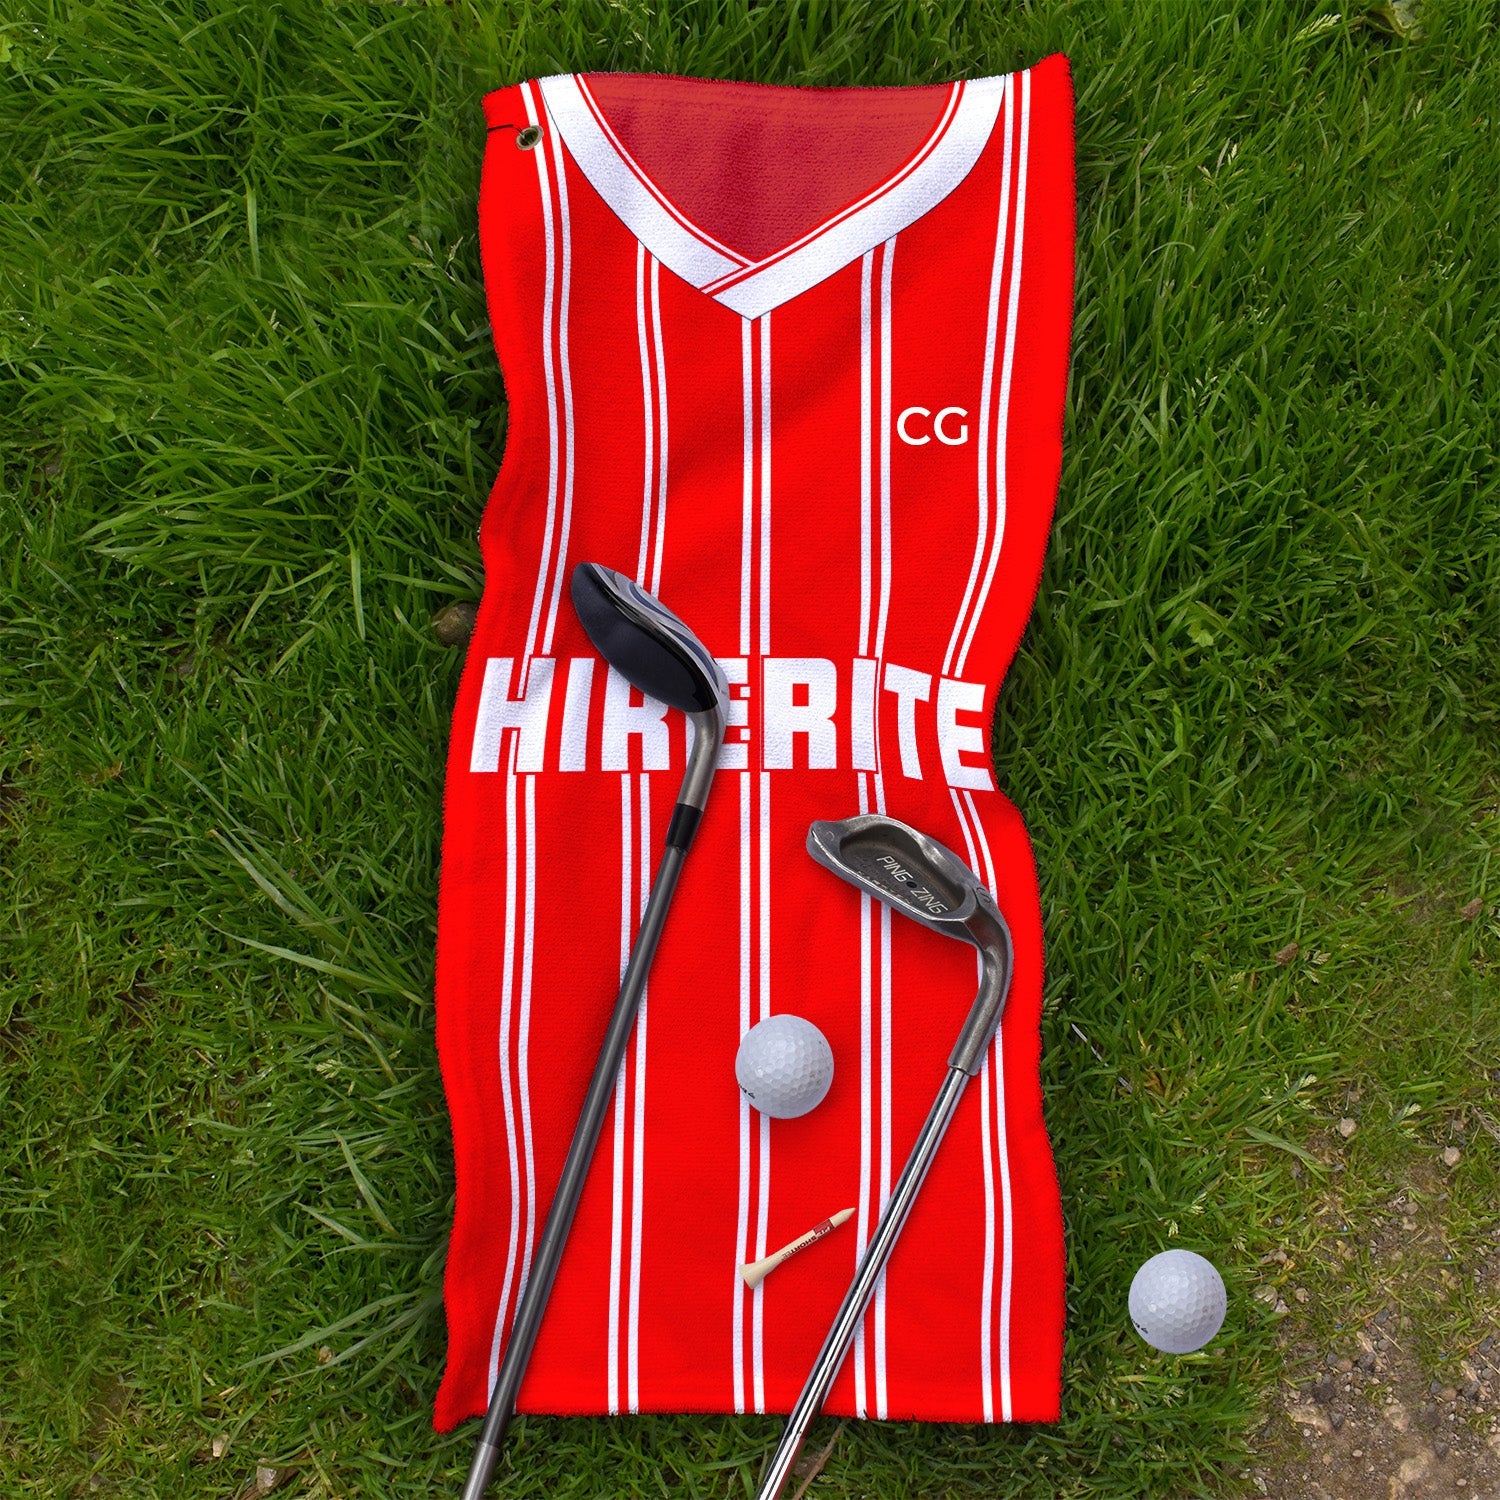 Bristol - 1998 Home - Retro Golf Towel